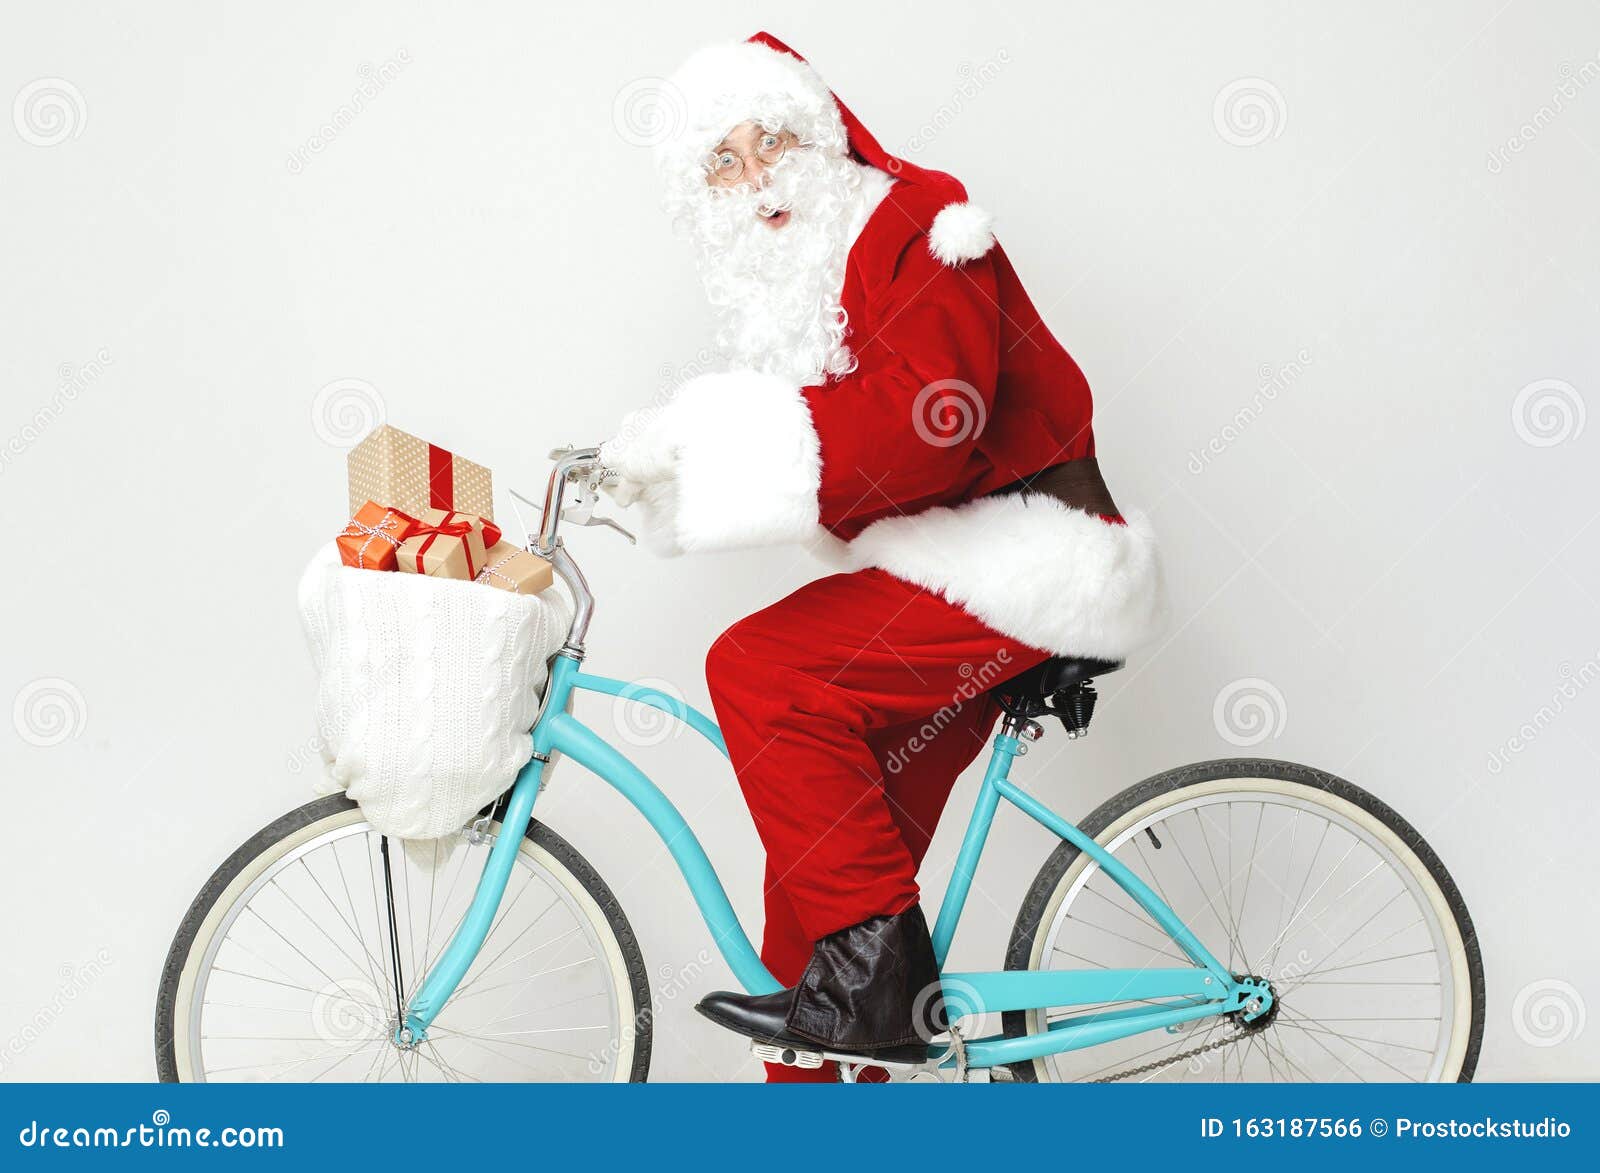 Weihnachtsmann Auf Fahrrad Fotos Kostenlose Und Royalty Free Stock Fotos Von Dreamstime